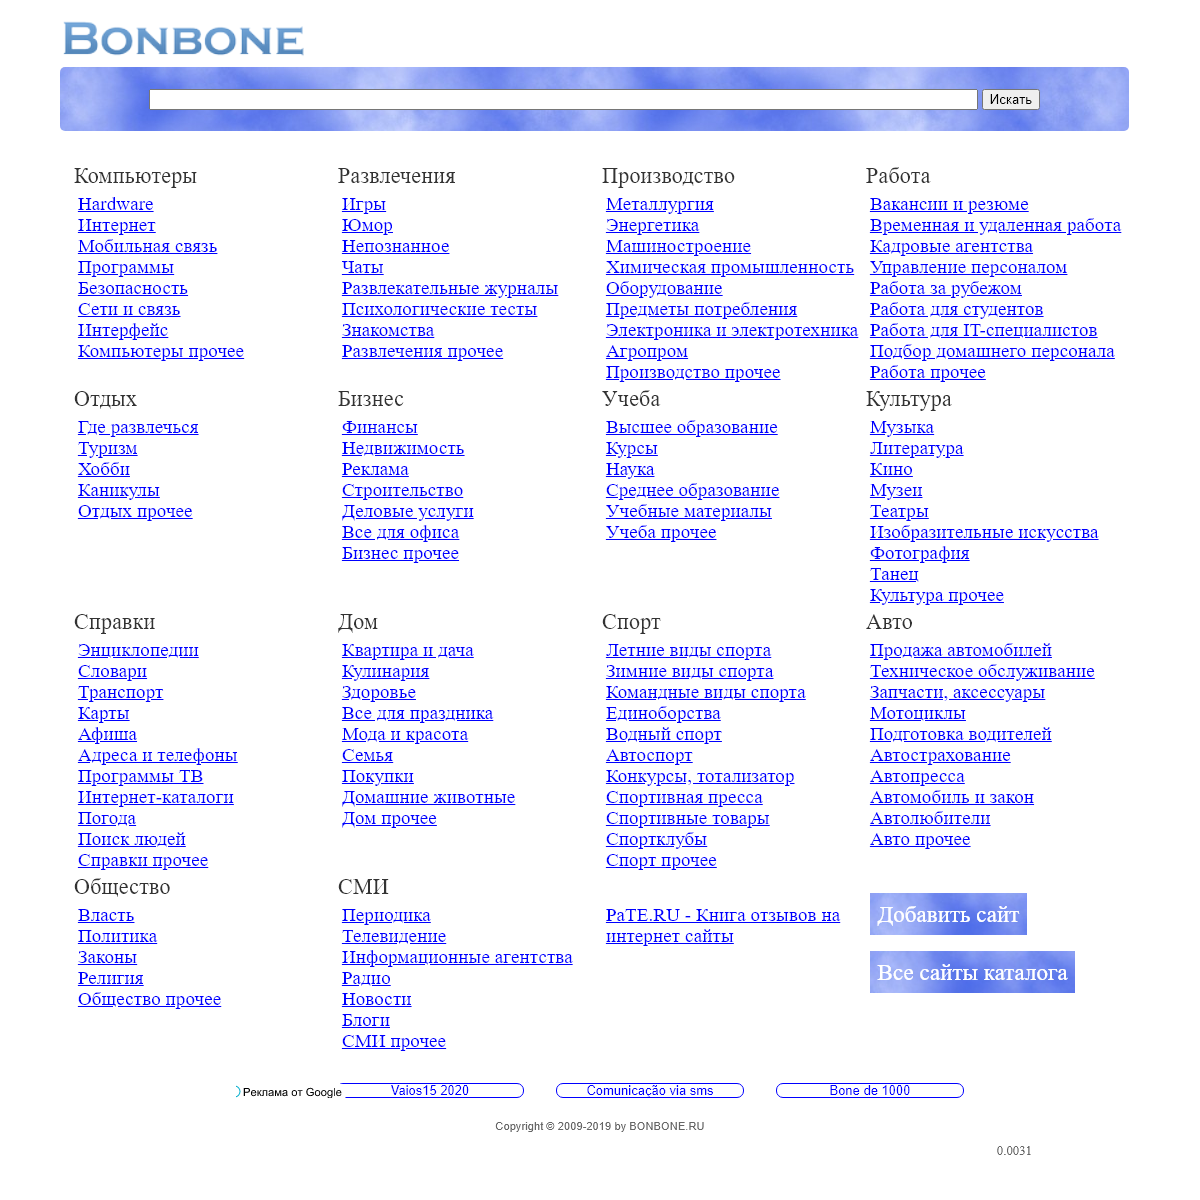 A complete backup of bonbone.ru